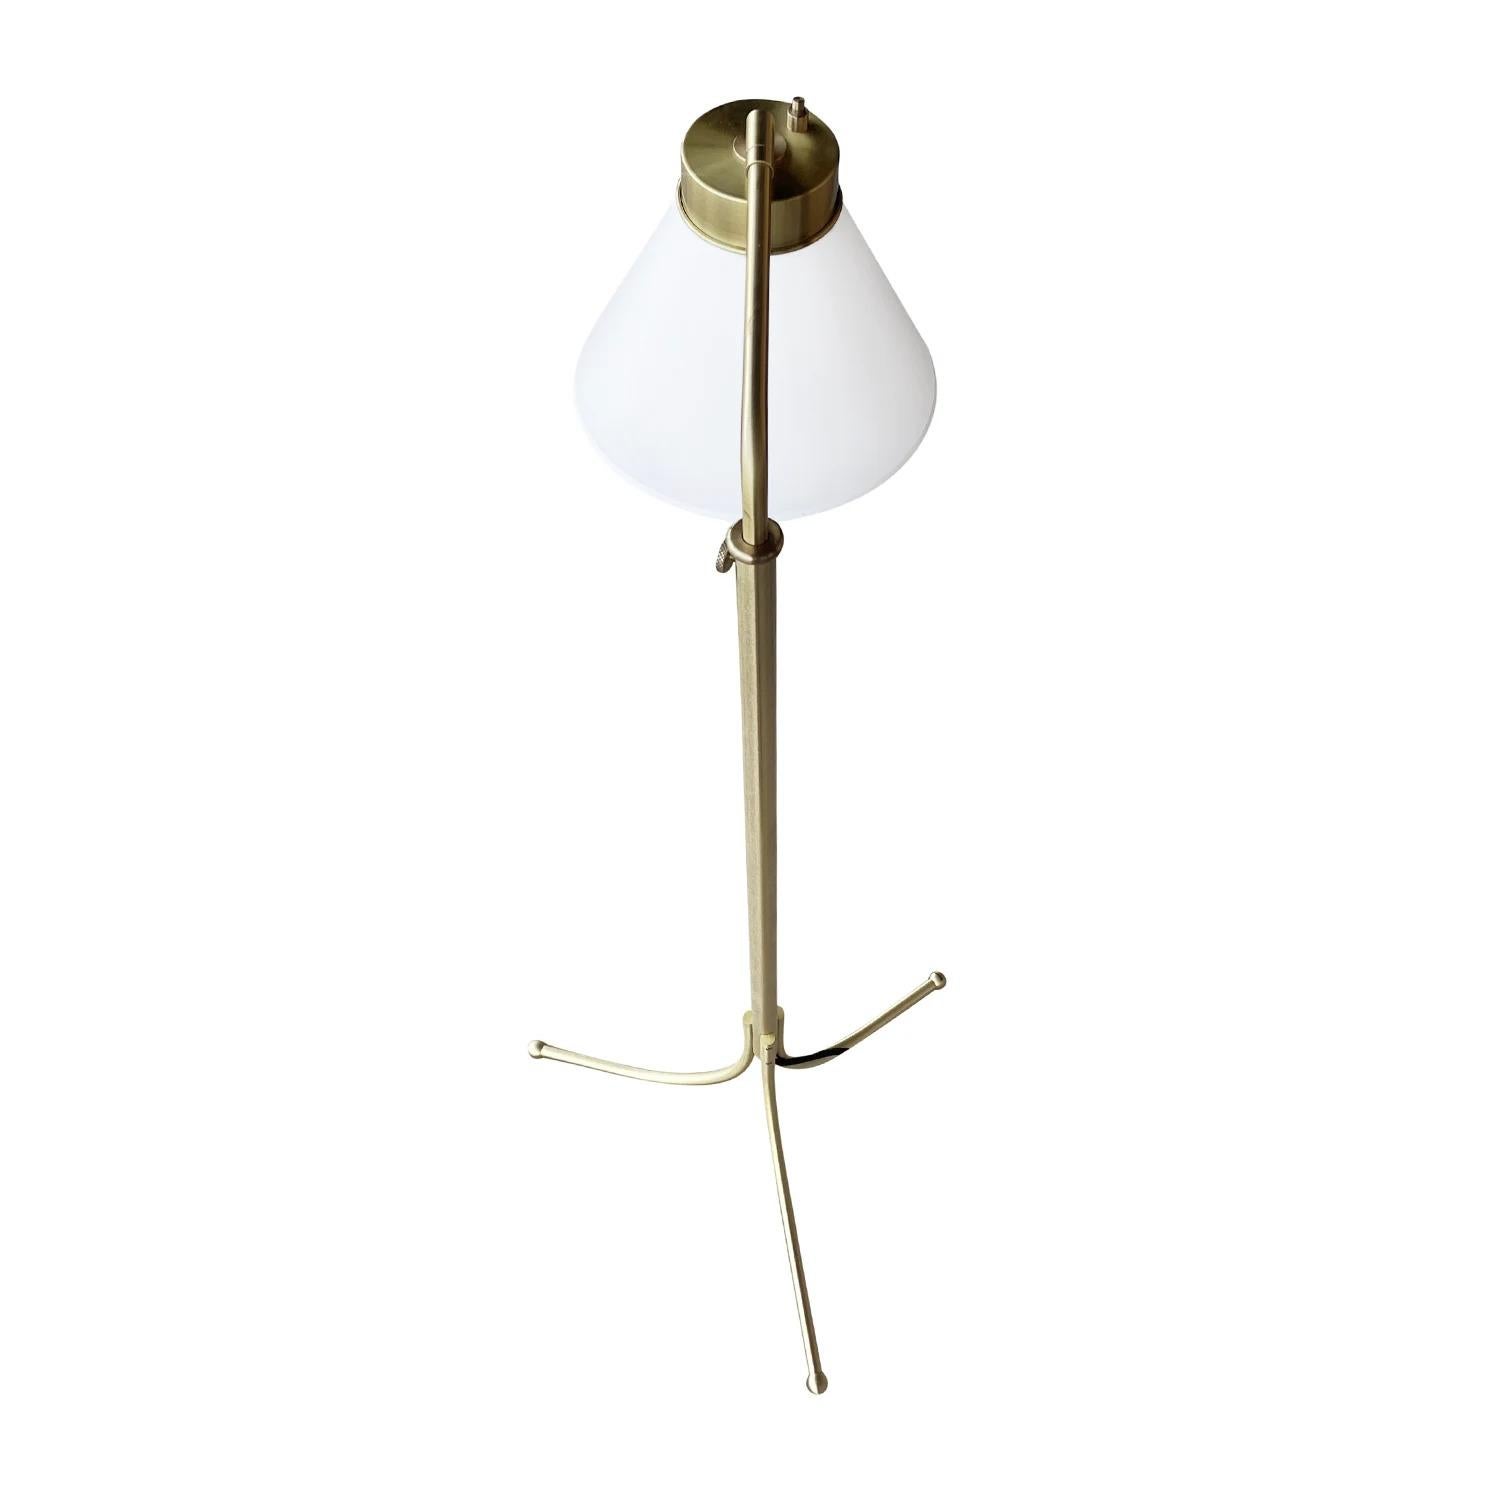 Polished 20th Century Swedish Svenskt Tenn Vintage Brass Floor Lamp, Light by Josef Frank For Sale